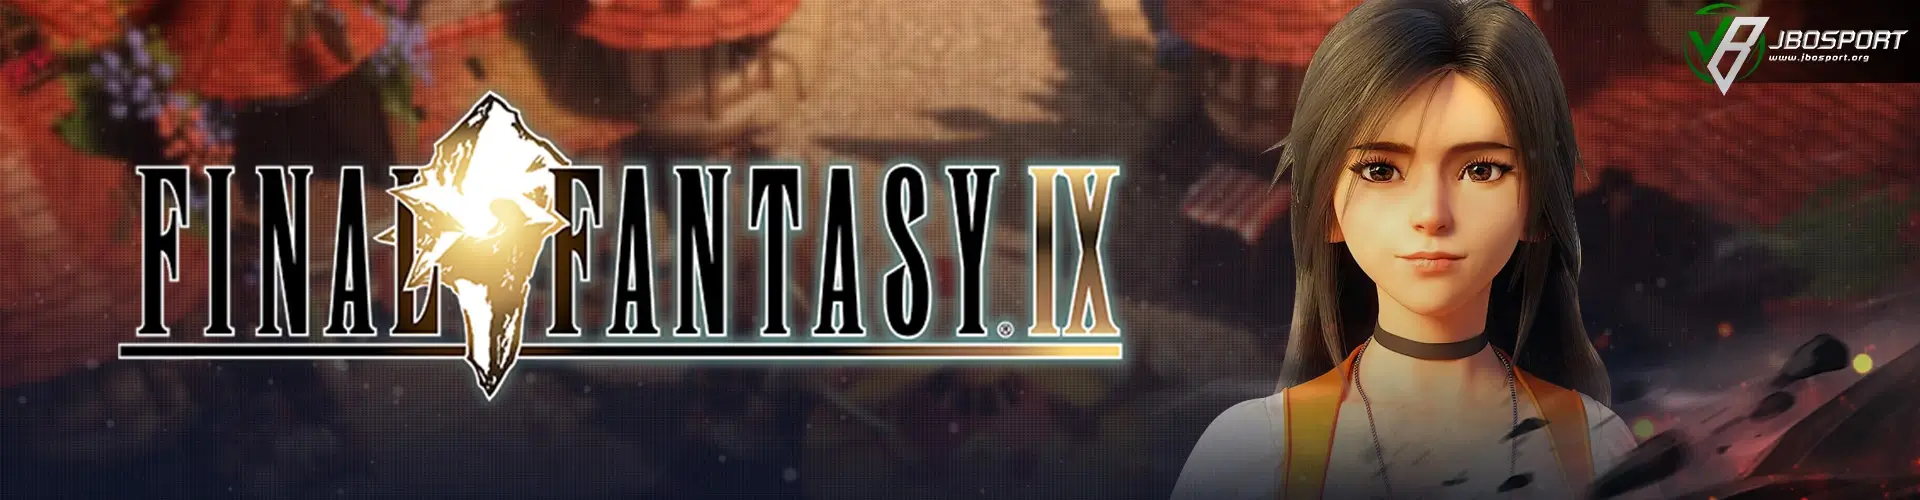 Final-Fantasy-IX